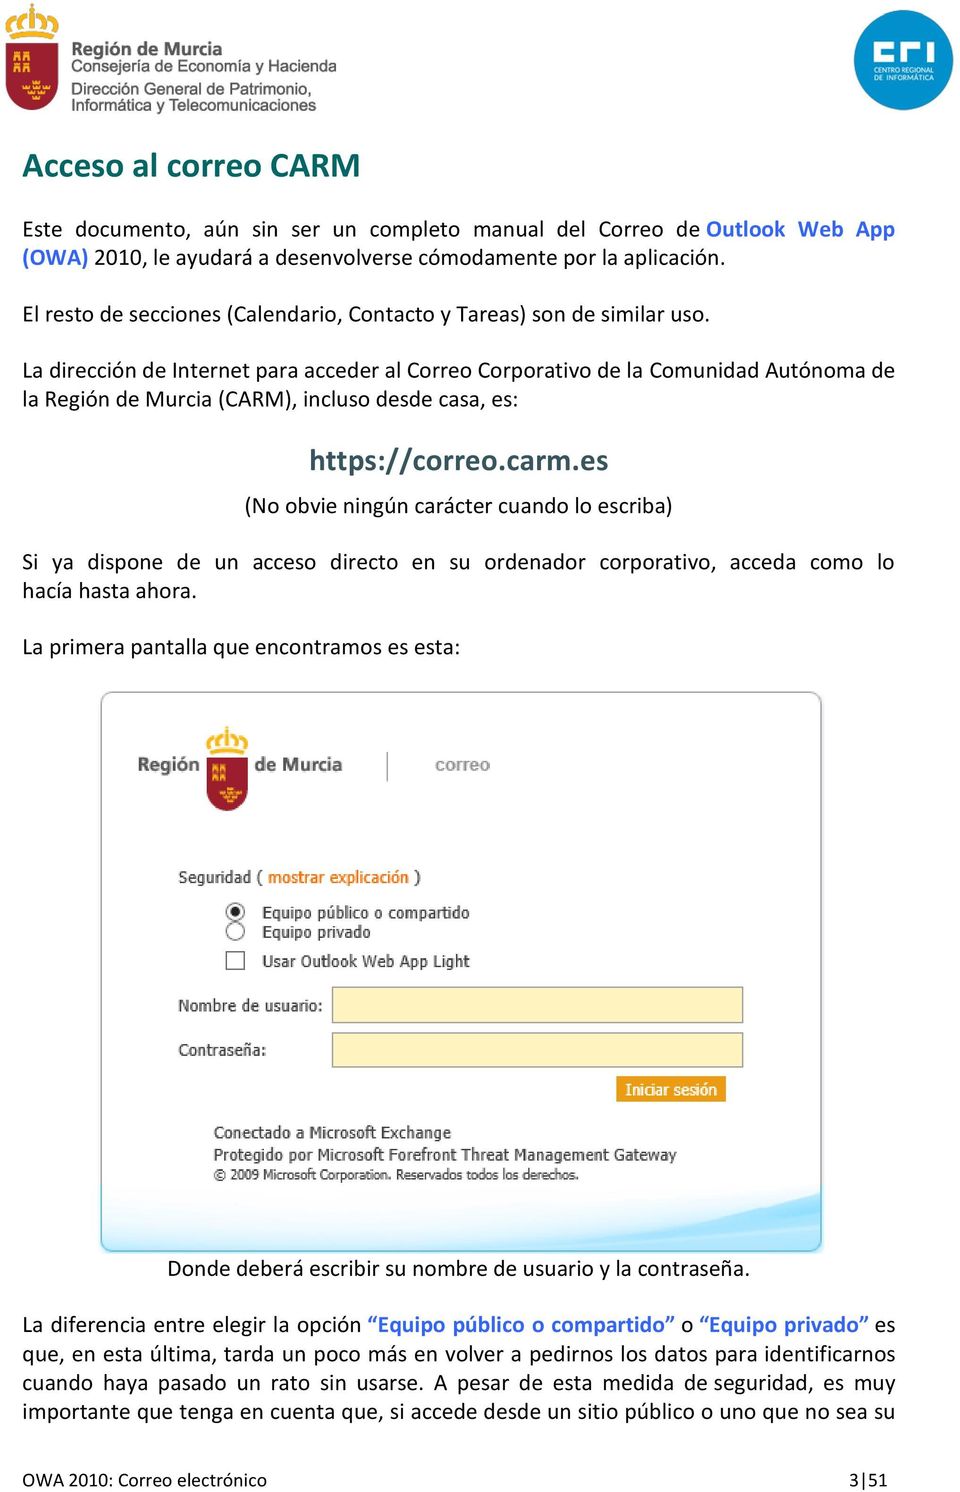 La dirección de Internet para acceder al Correo Corporativo de la Comunidad Autónoma de la Región de Murcia (CARM), incluso desde casa, es: https://correo.carm.